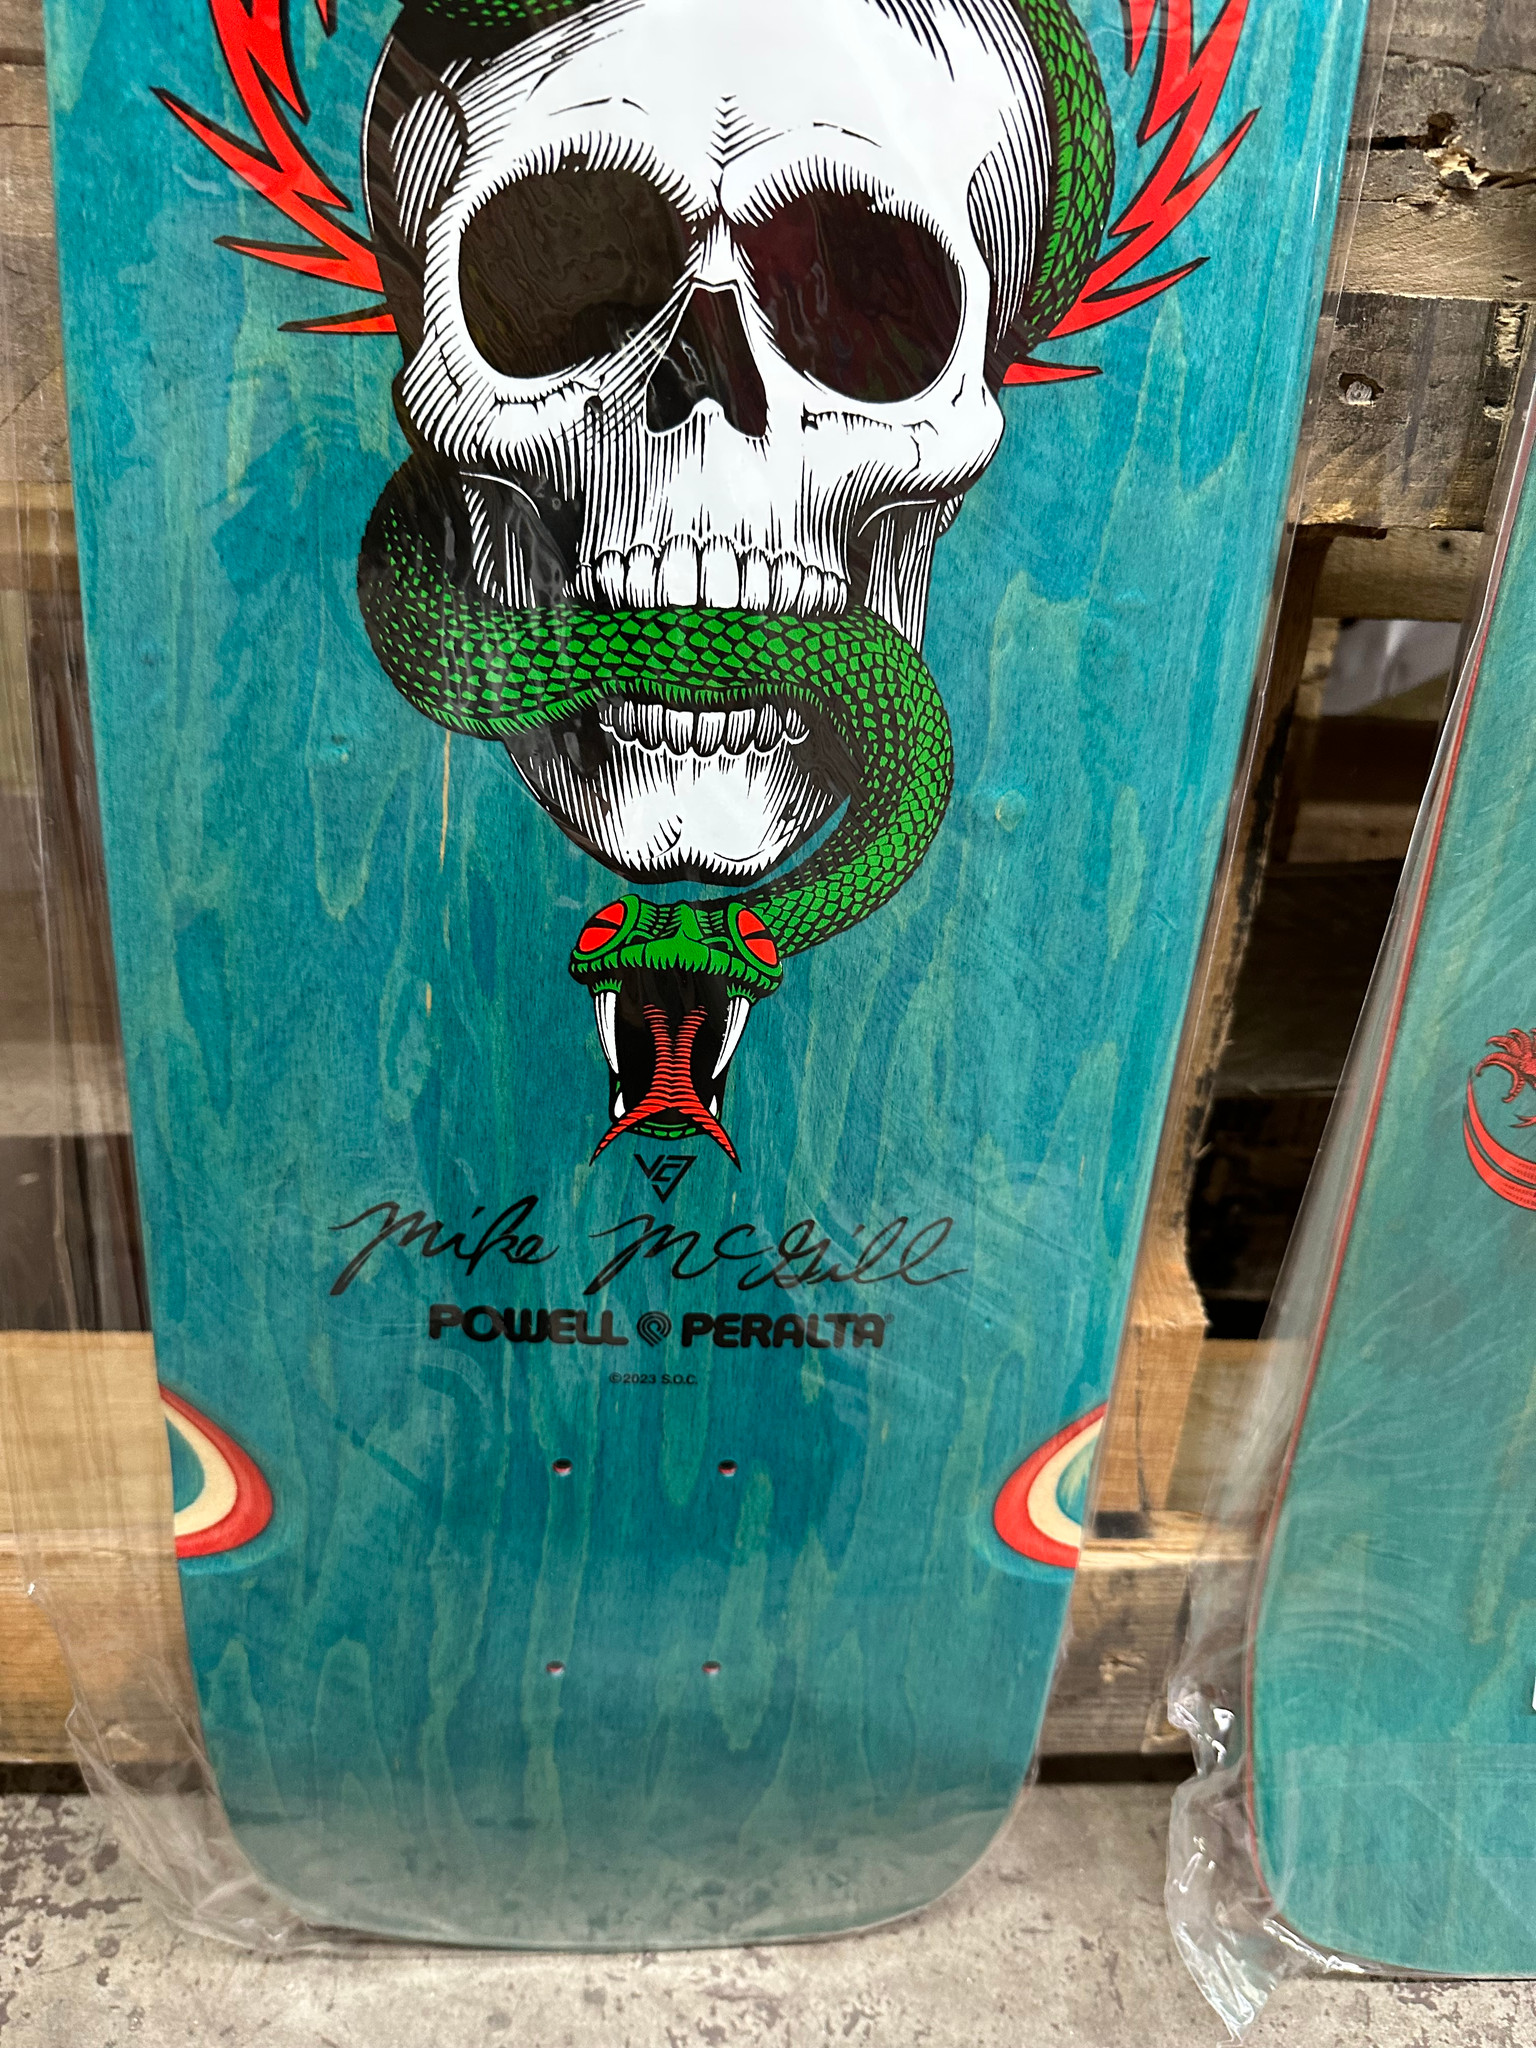 Powell Peralta Mike McGill Skull & Snake Skateboard Deck Teal Stain